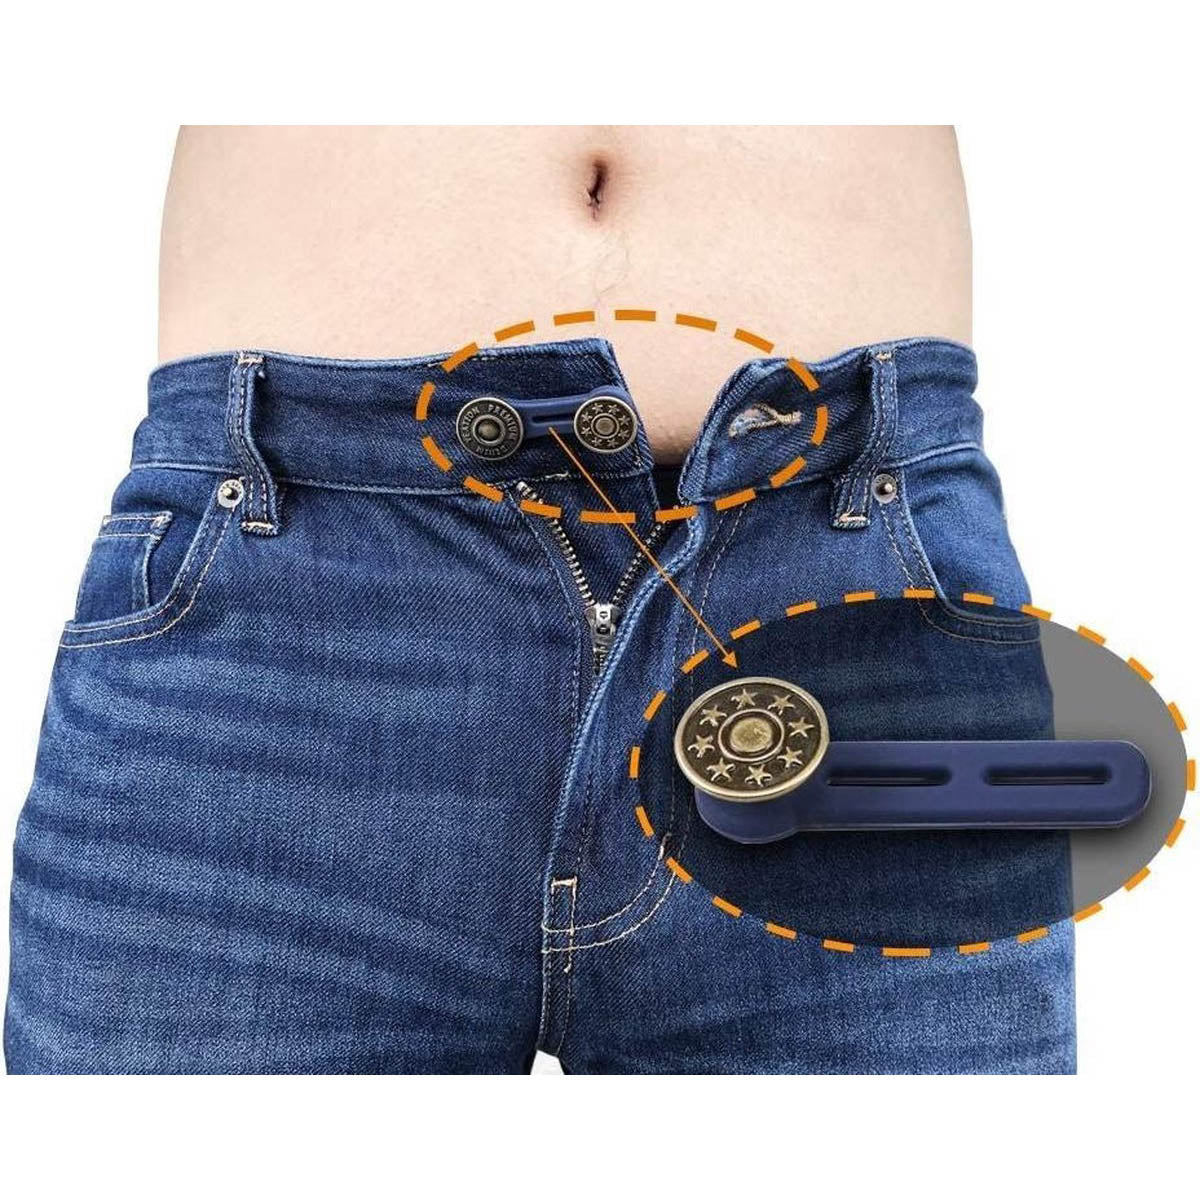 3 Stück Jeans Verlängerungsknopf - 5 cm - Knopfverlängerung - Anpassungsknopf - Jeans zu eng - Wunderknöpfe - Schwangerschaftshose weiten - Knopflochverlängerungen